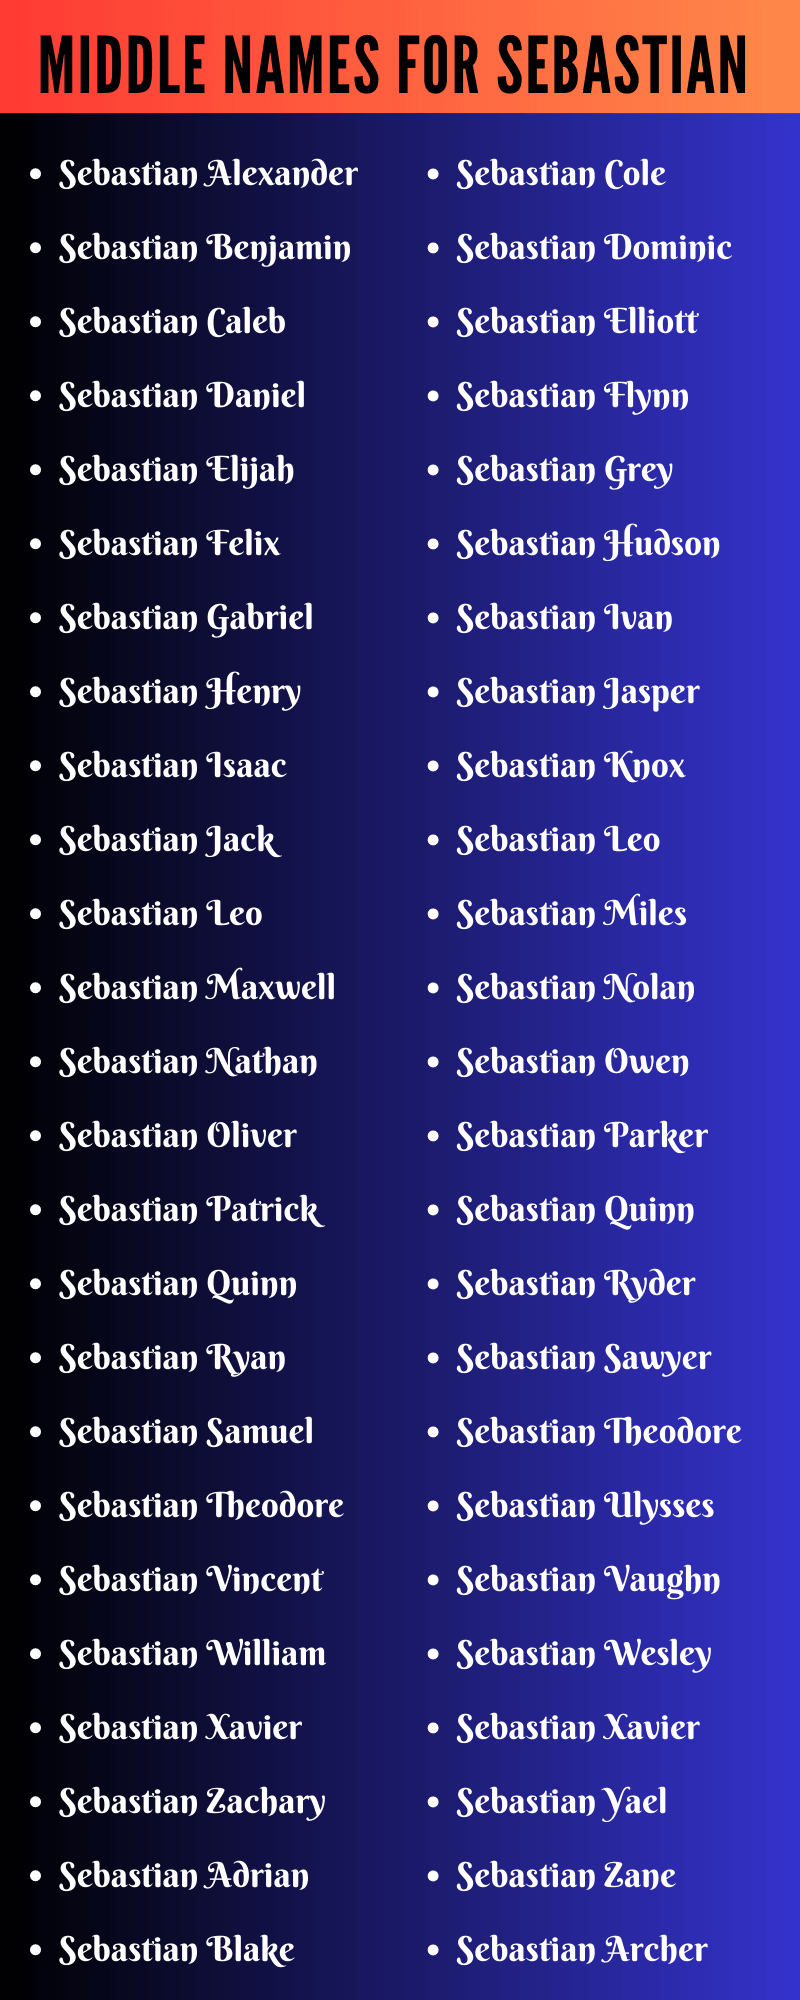 Middle Names For Sebastian